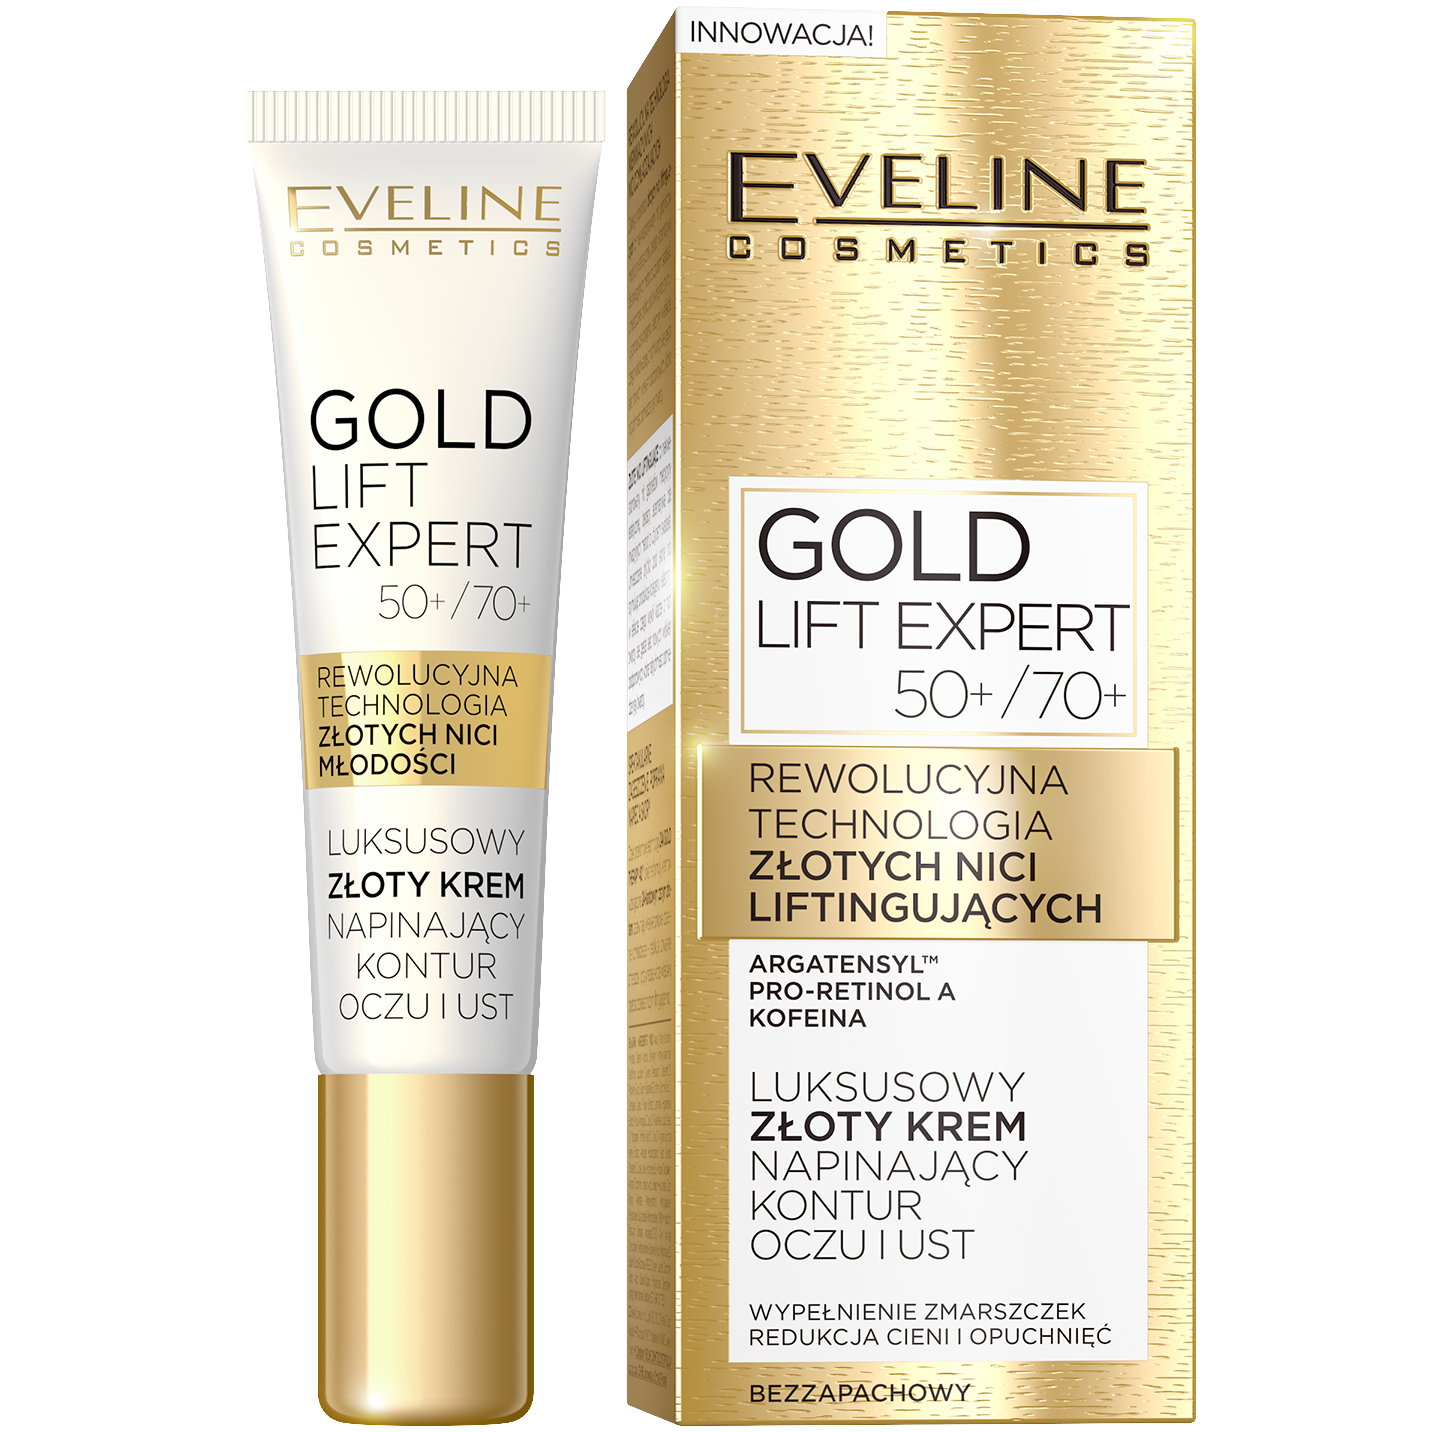 Eveline Cosmetics Gold Lift Expert крем для подтяжки контура глаз и губ 50+/70+, 15 мл eveline cosmetics эксклюзивный золотой крем против морщин для контура глаз gold lift expert 15 мл 15 г